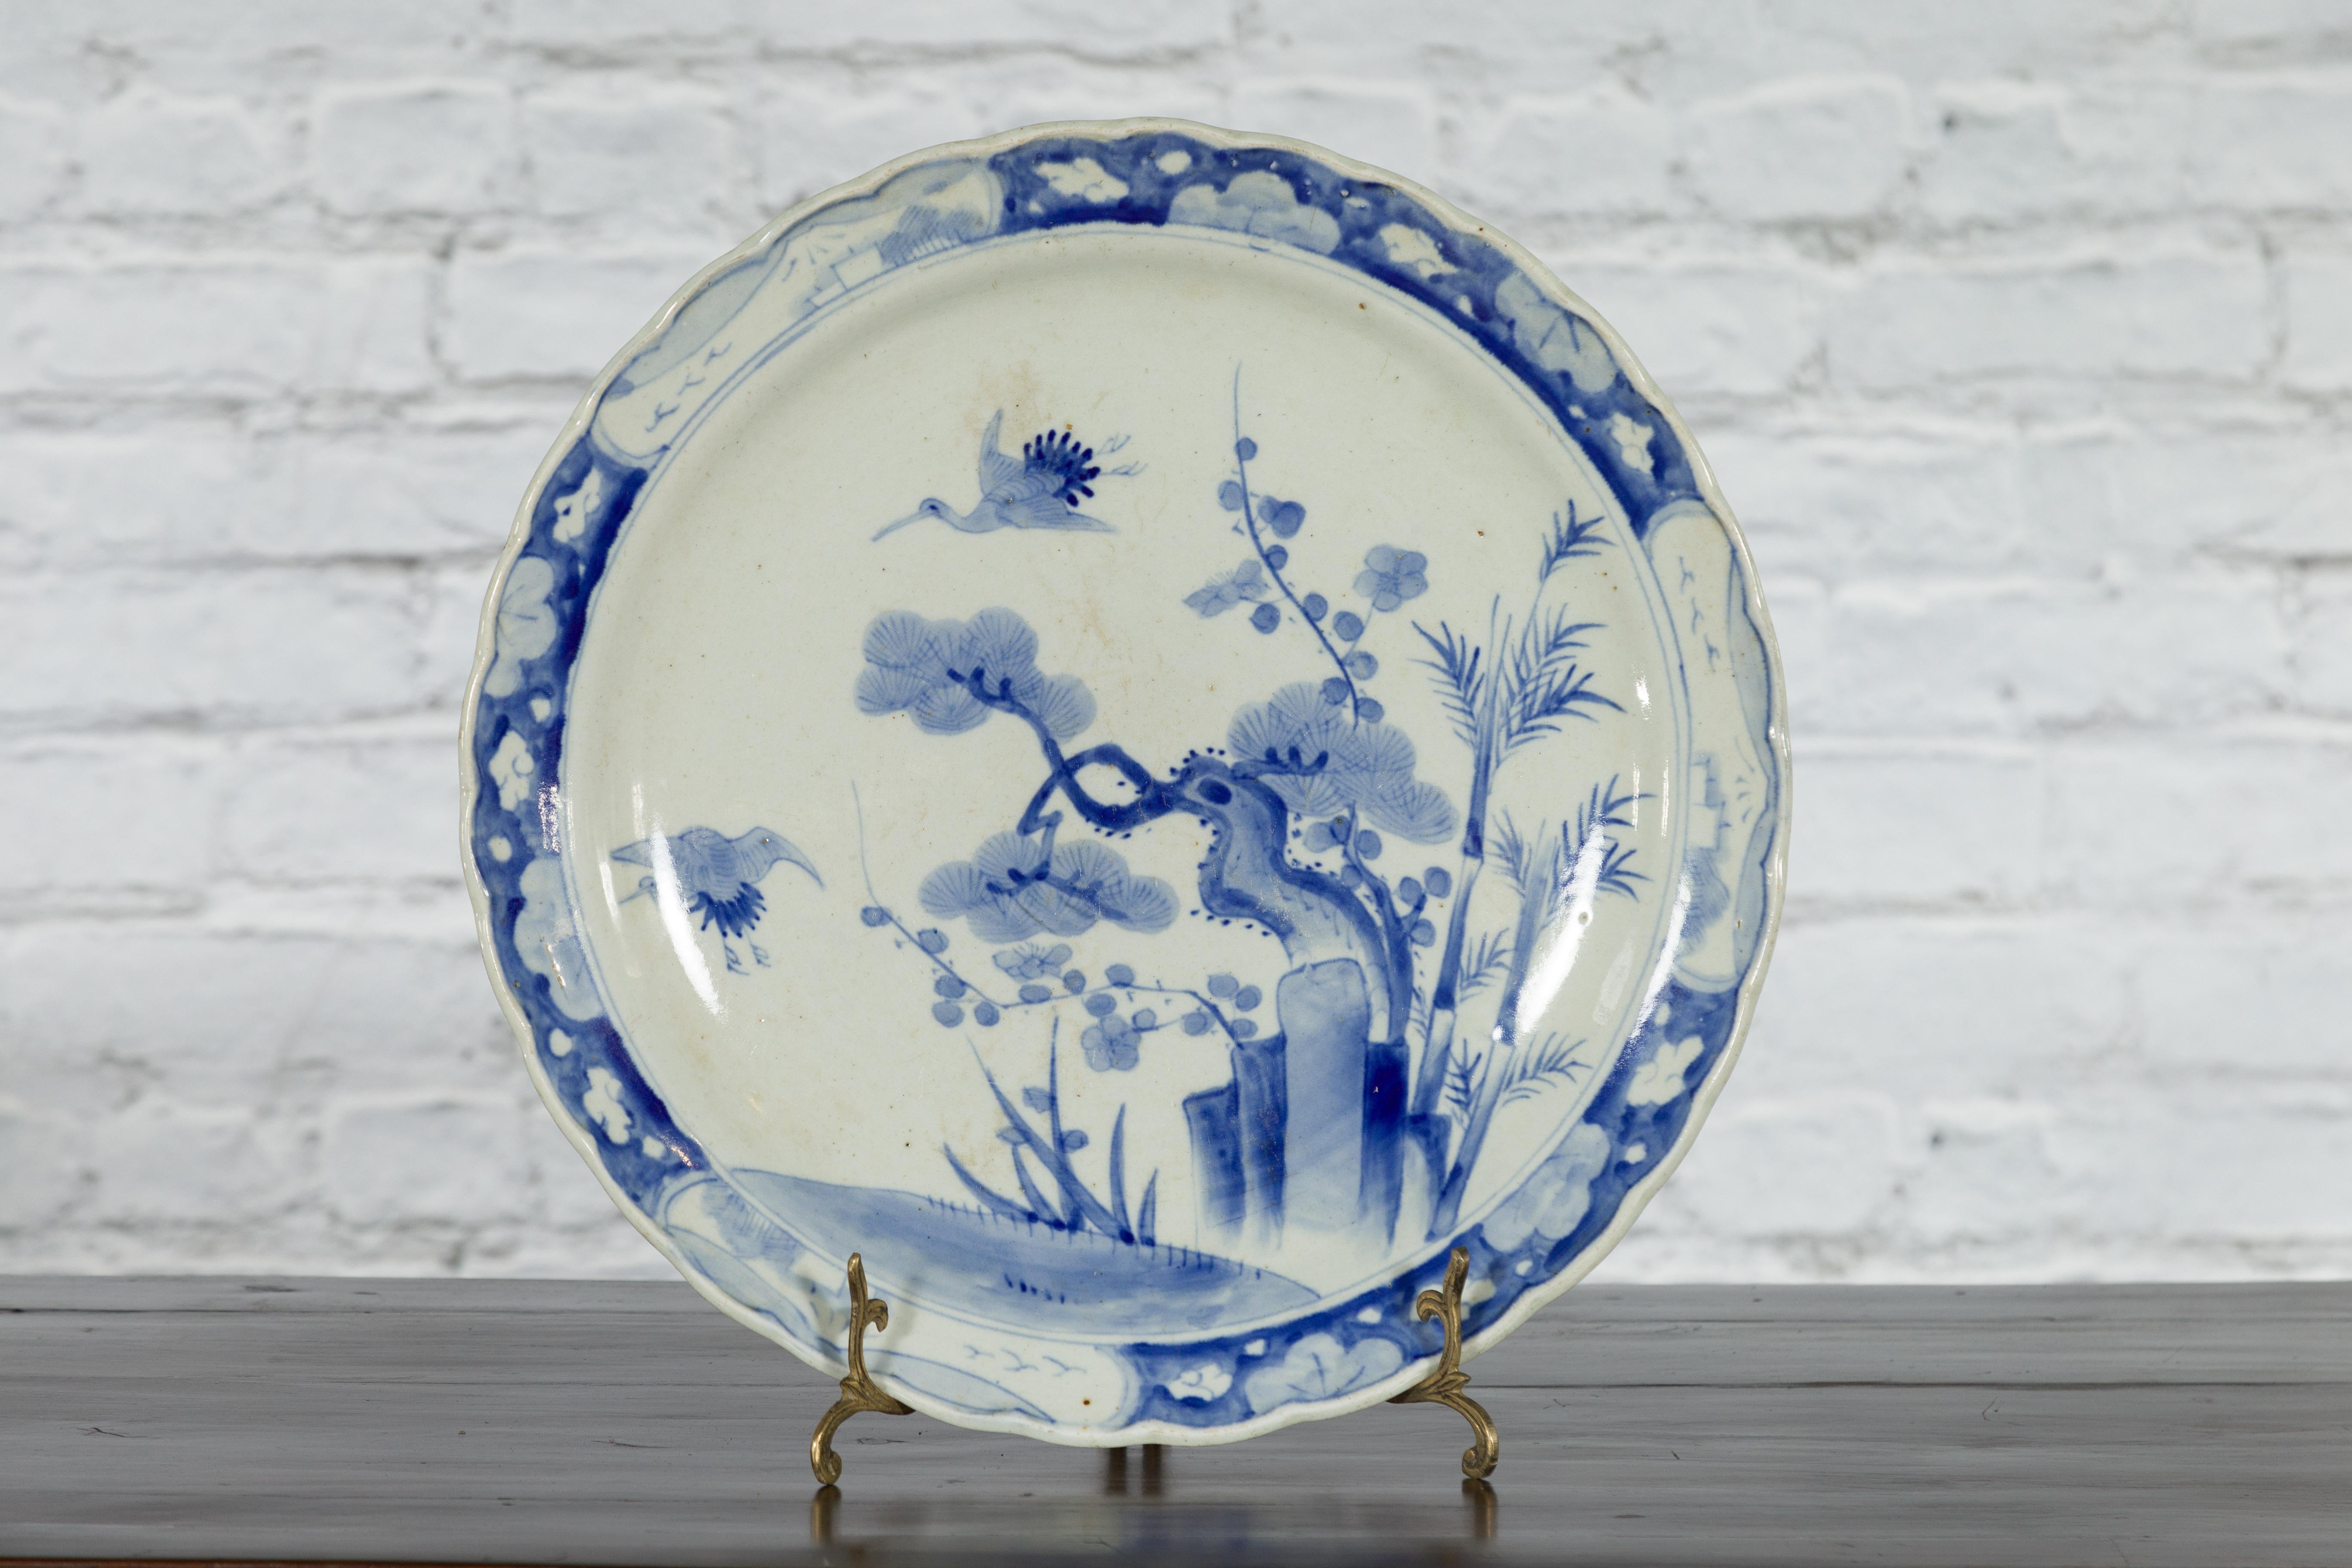 Ein japanischer Porzellanteller aus dem 19. Jahrhundert mit handgemaltem blau-weißem Dekor aus blühenden Bäumen, Felsformationen und Vögeln. Dieser Porzellanteller wurde im 19. Jahrhundert in Japan hergestellt und zeigt ein zartes blau-weißes Dekor,